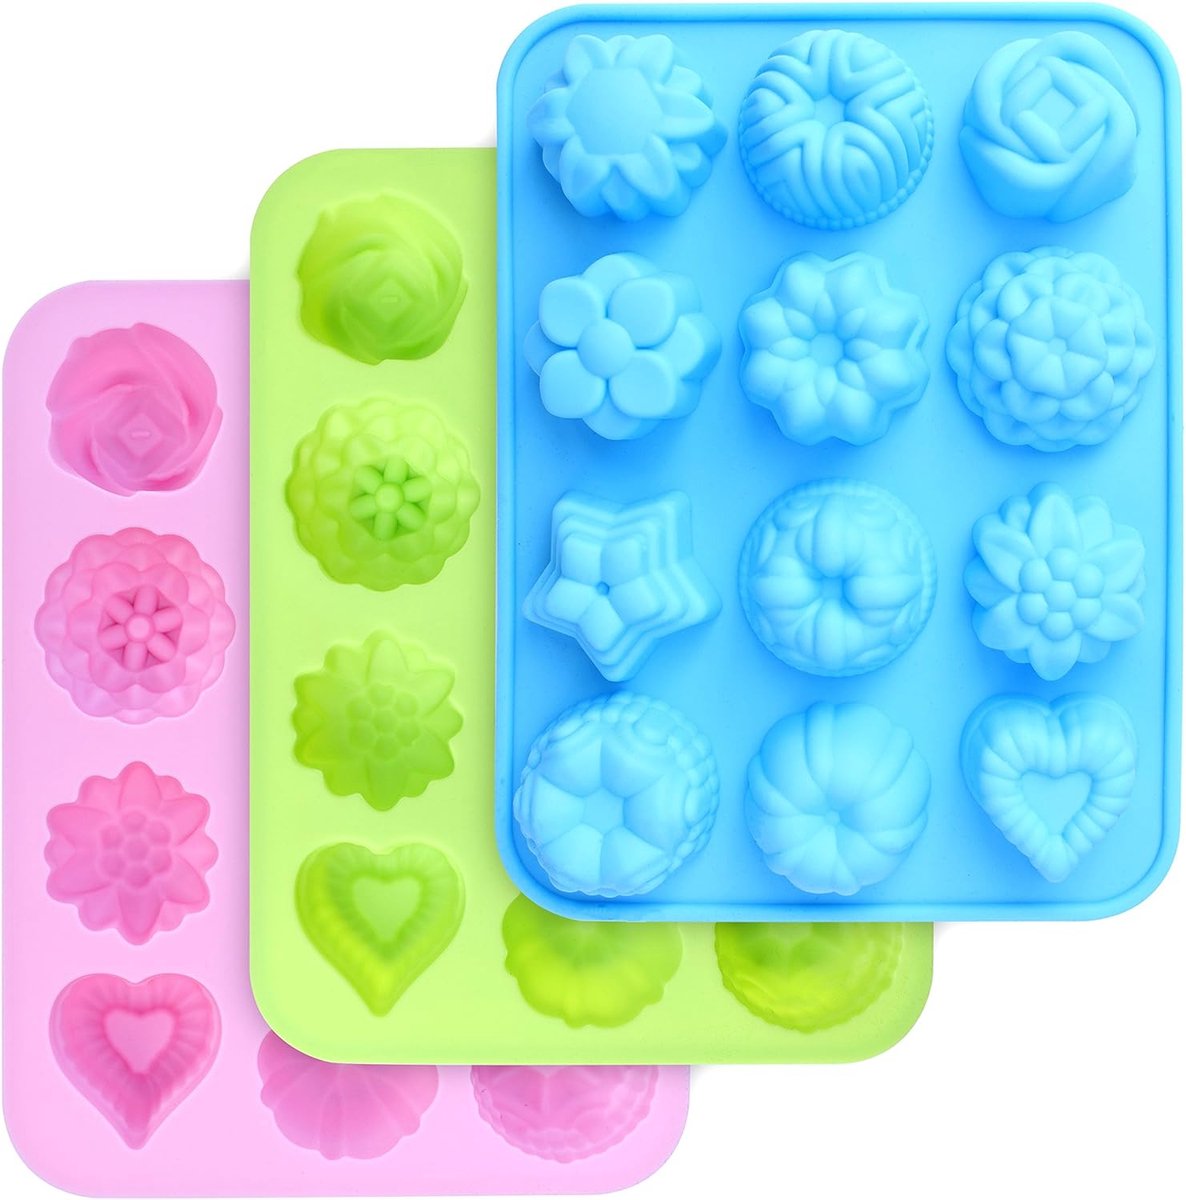 Siliconen mallen in levensmiddelenkwaliteit, bakvorm met bloemen- en hartvorm, anti-aanbaklaag, 3 stuks siliconen vormen voor bonbons, snoep, gelei, ijsblokjes, muffin (roze, blauw en groen)